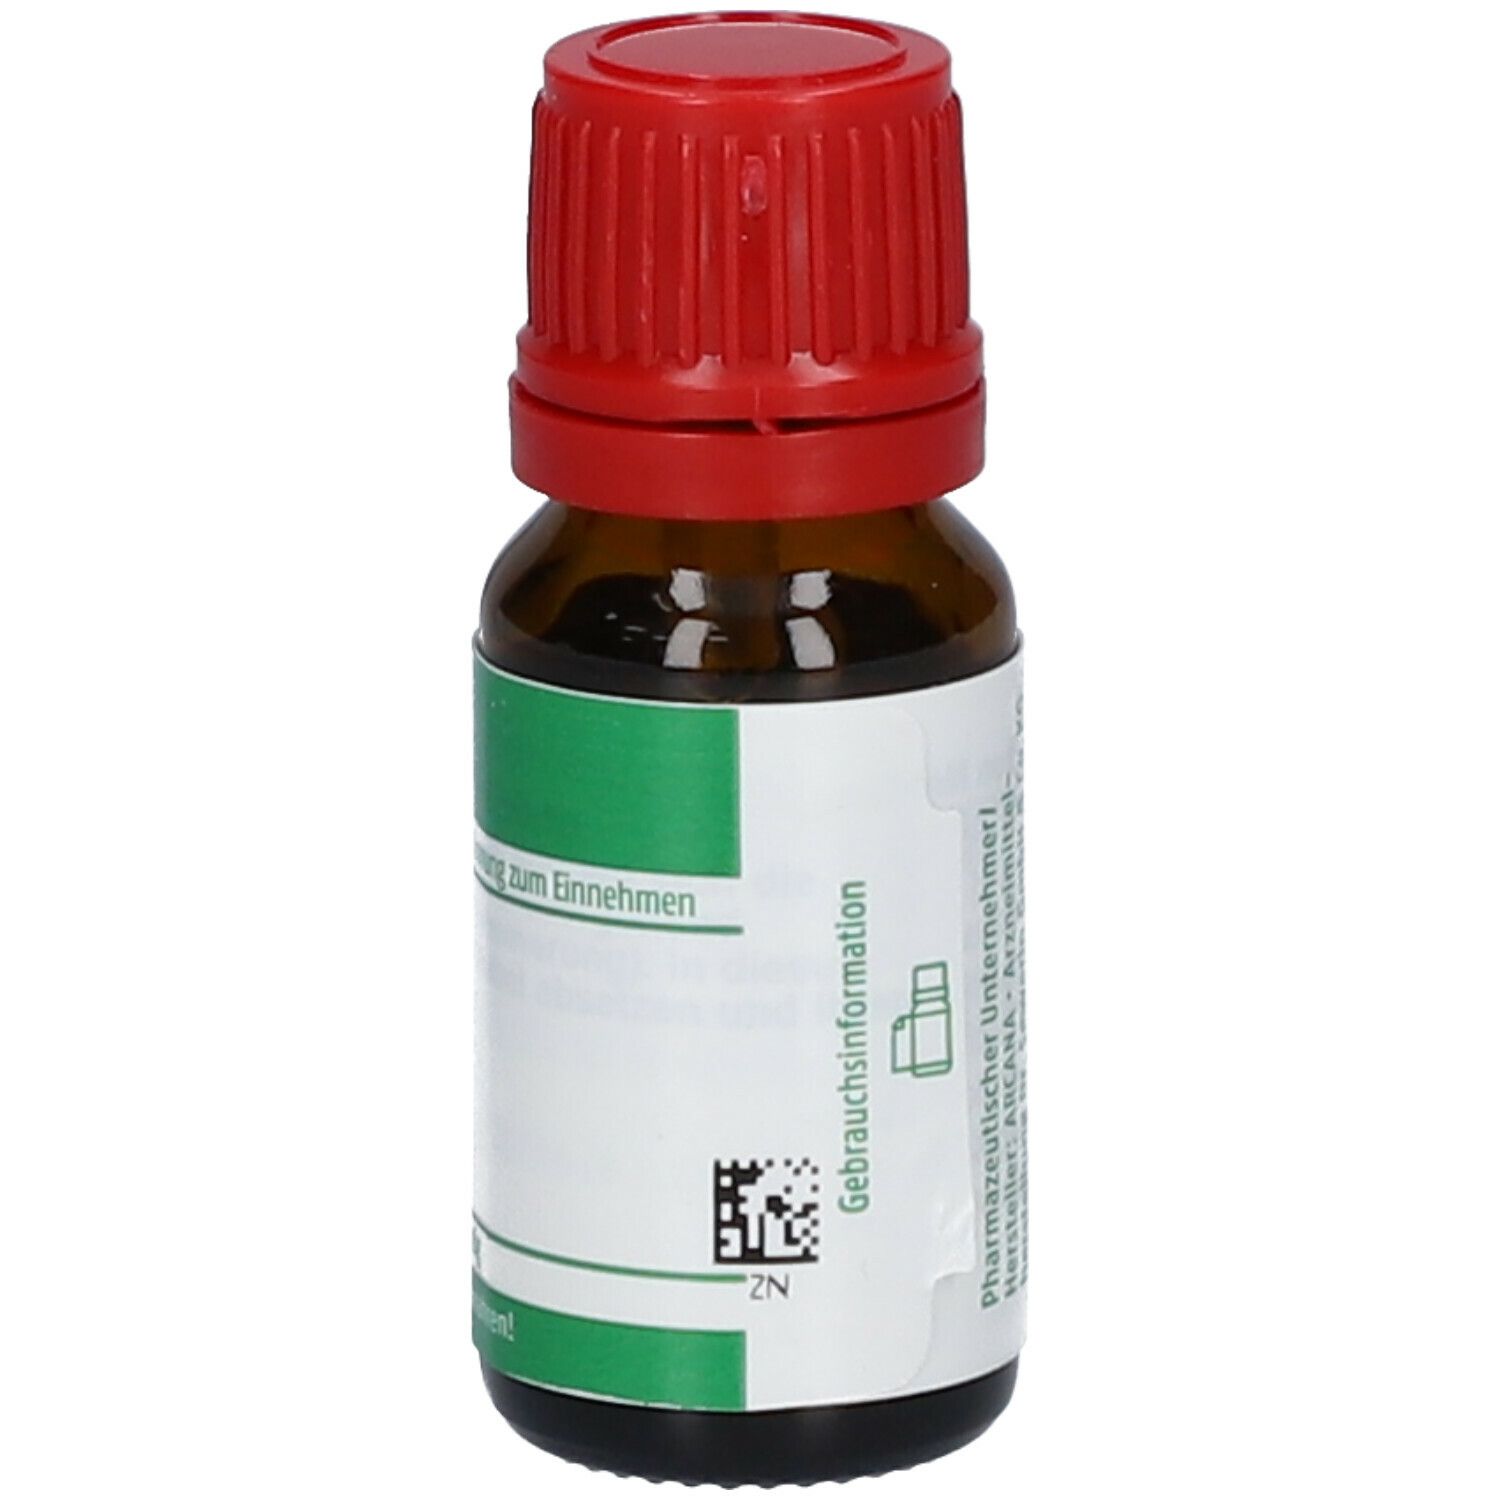 ARCANA® Calcium Silicatum LM VI